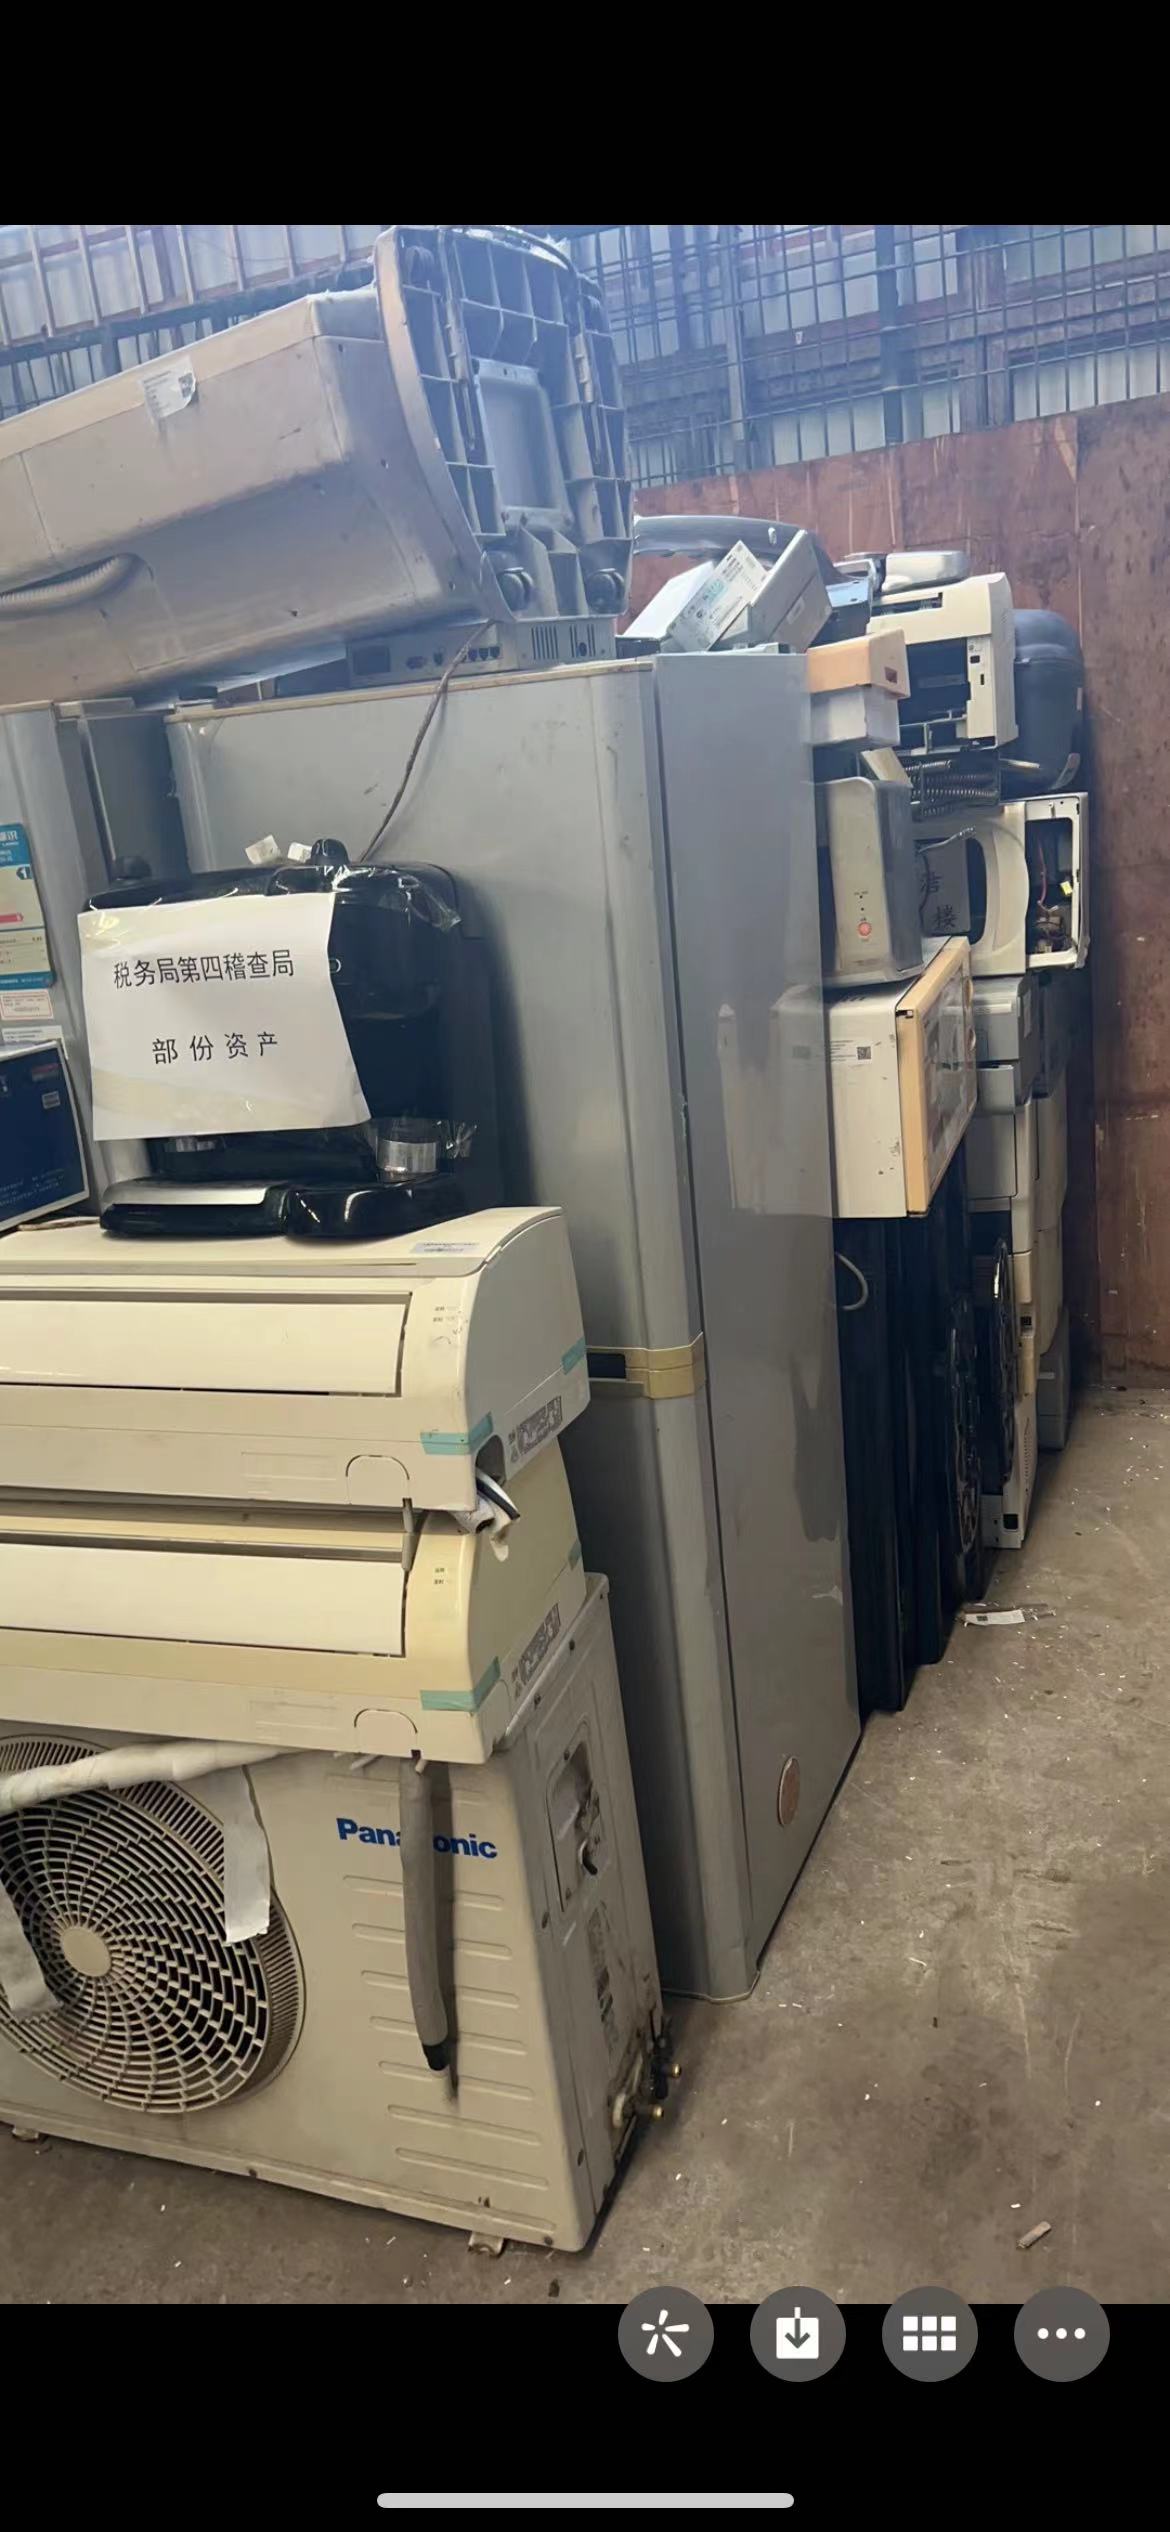 国家税务总局市税务局第四稽查局部分资产报废台式机 打印机 碎纸机等一批出售招标